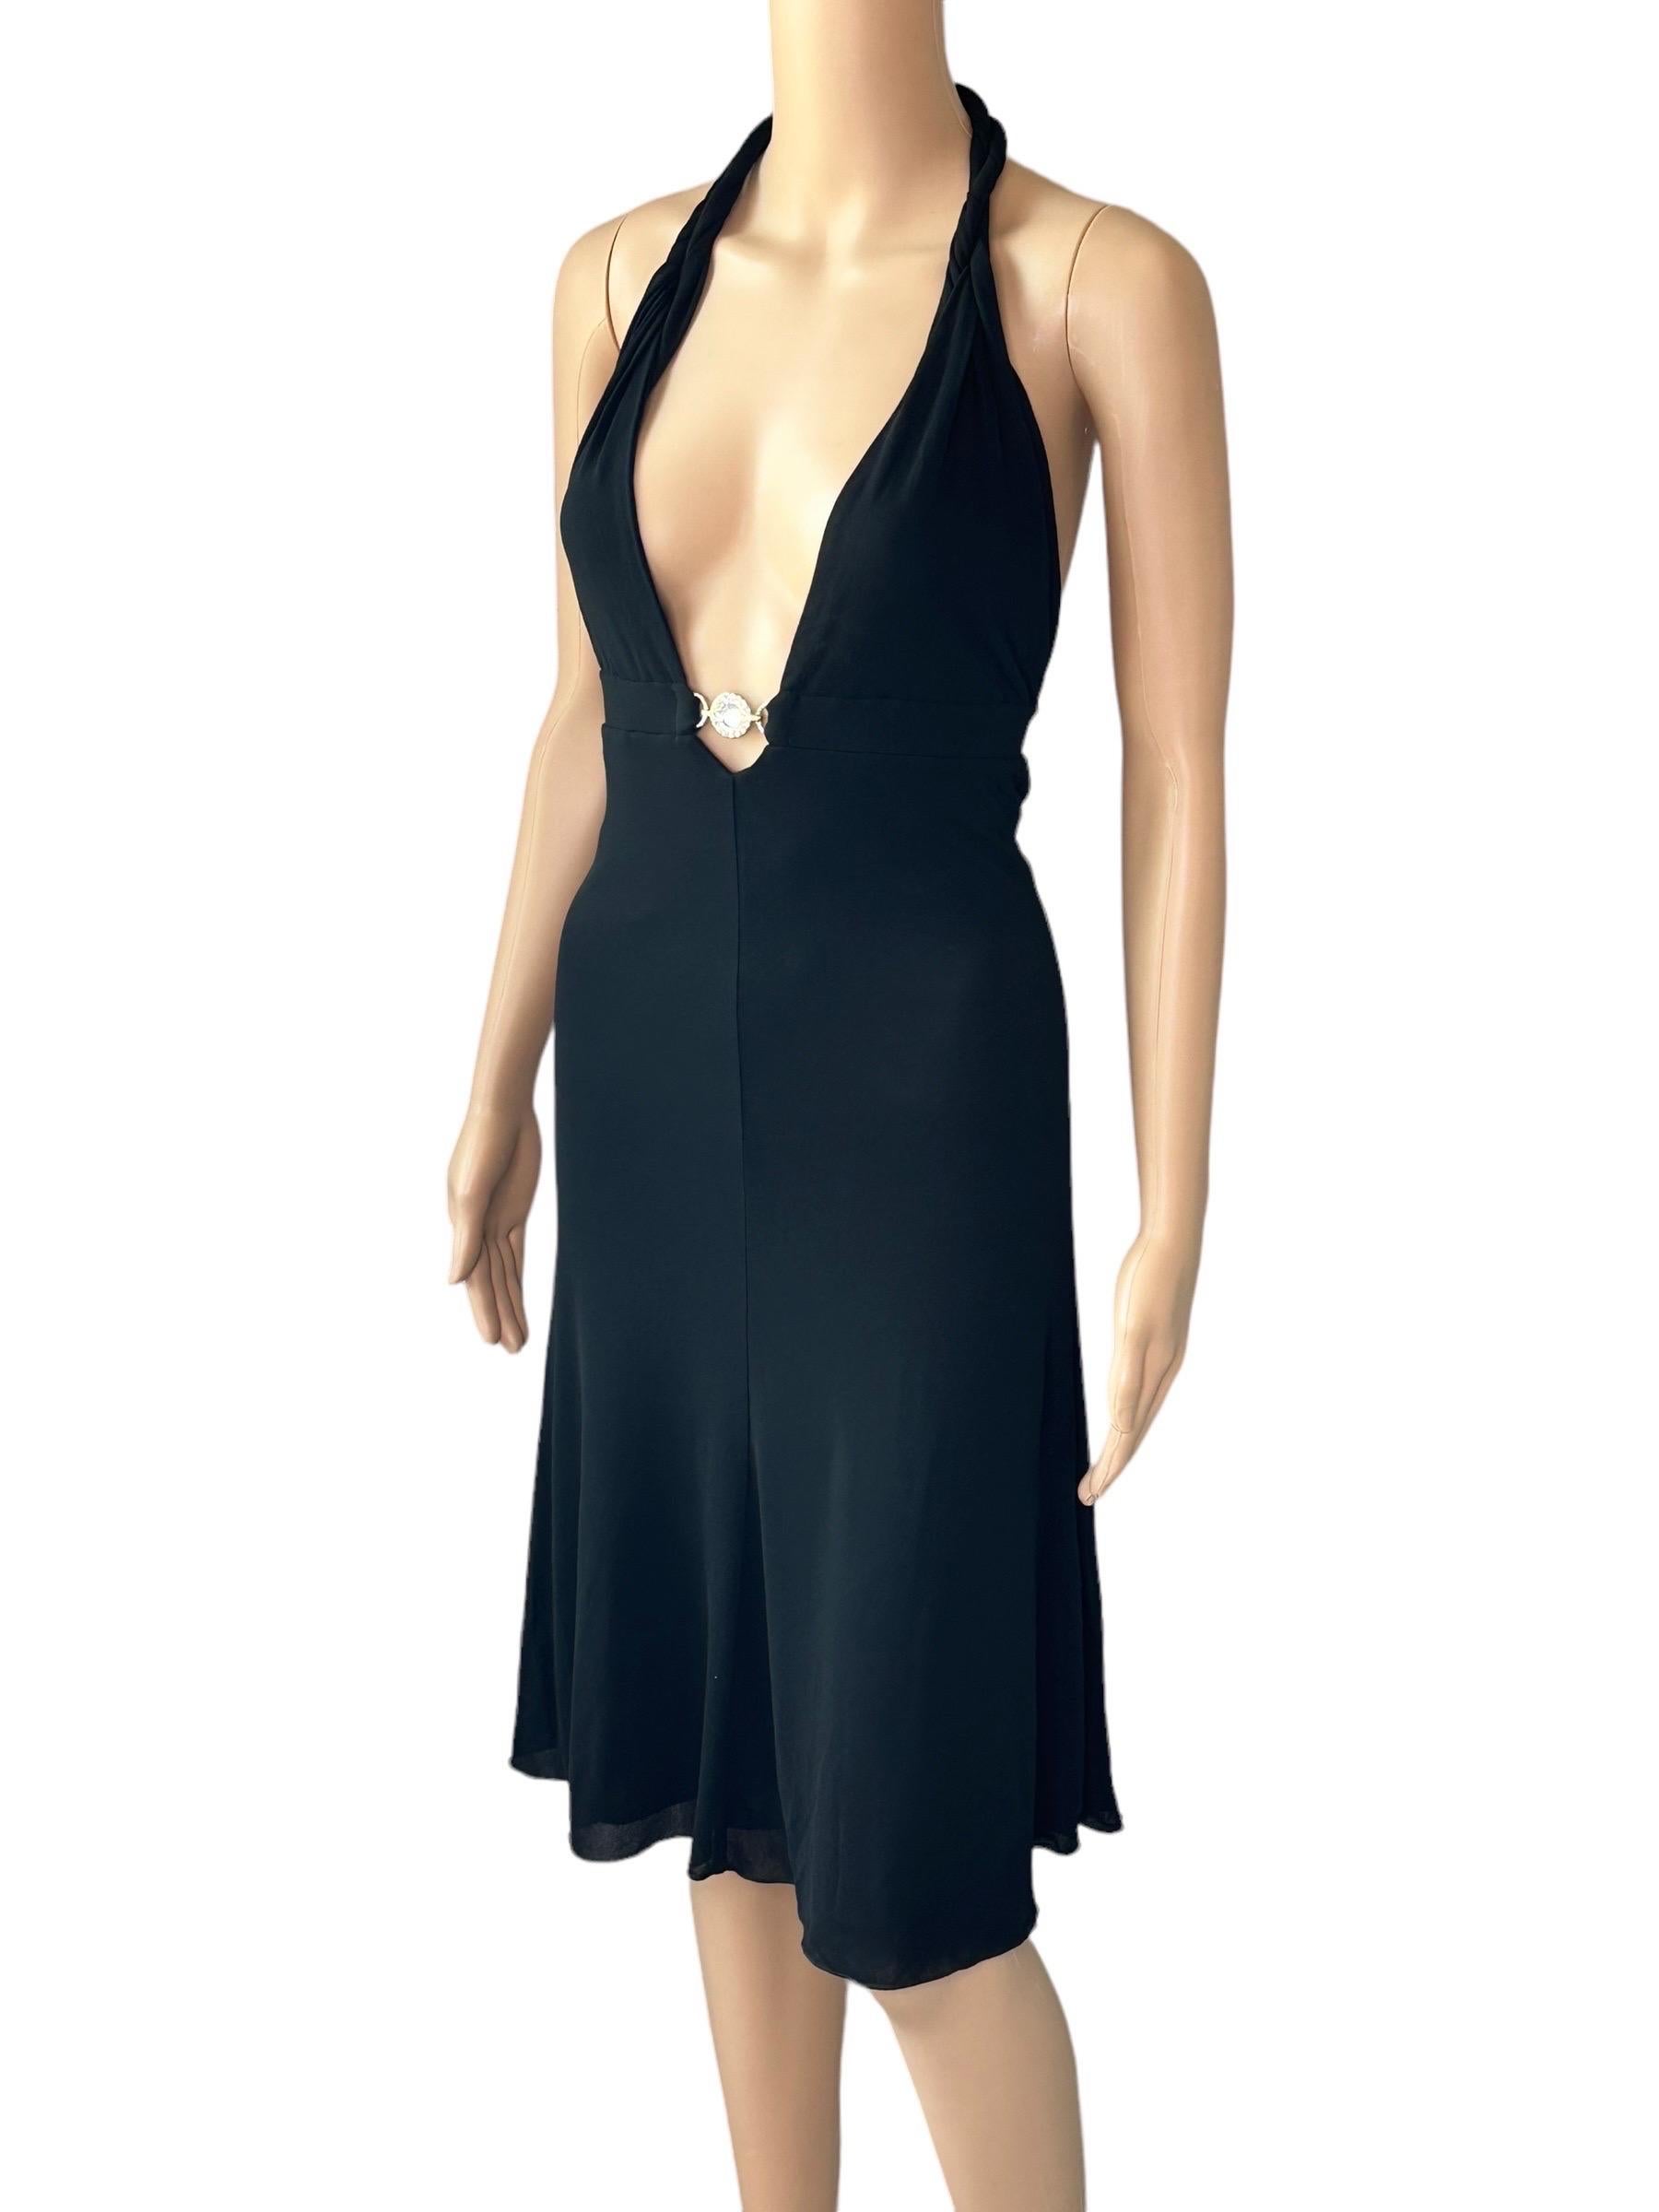 Women's Versace S/S 2007 Crystal Logo Plunging Neckline Backless Halter Black Dress For Sale